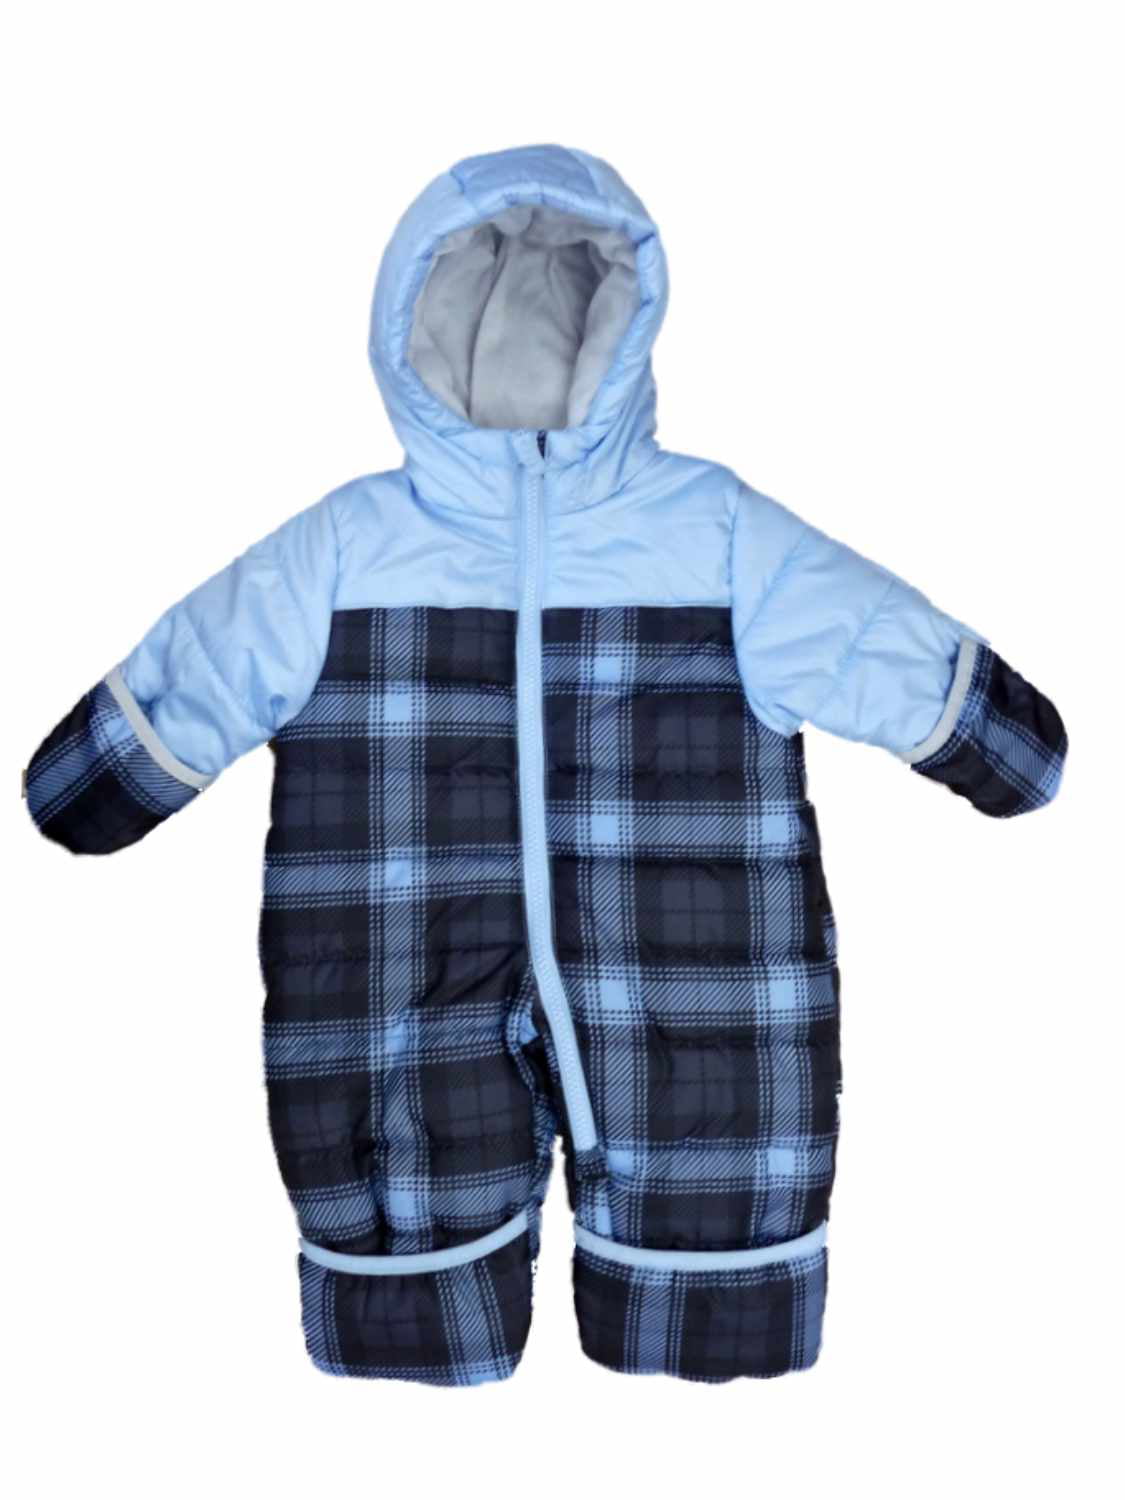 Carter's Infant Boys Grey Camo Two-Piece Snowsuit Size 12M 18M 24M 